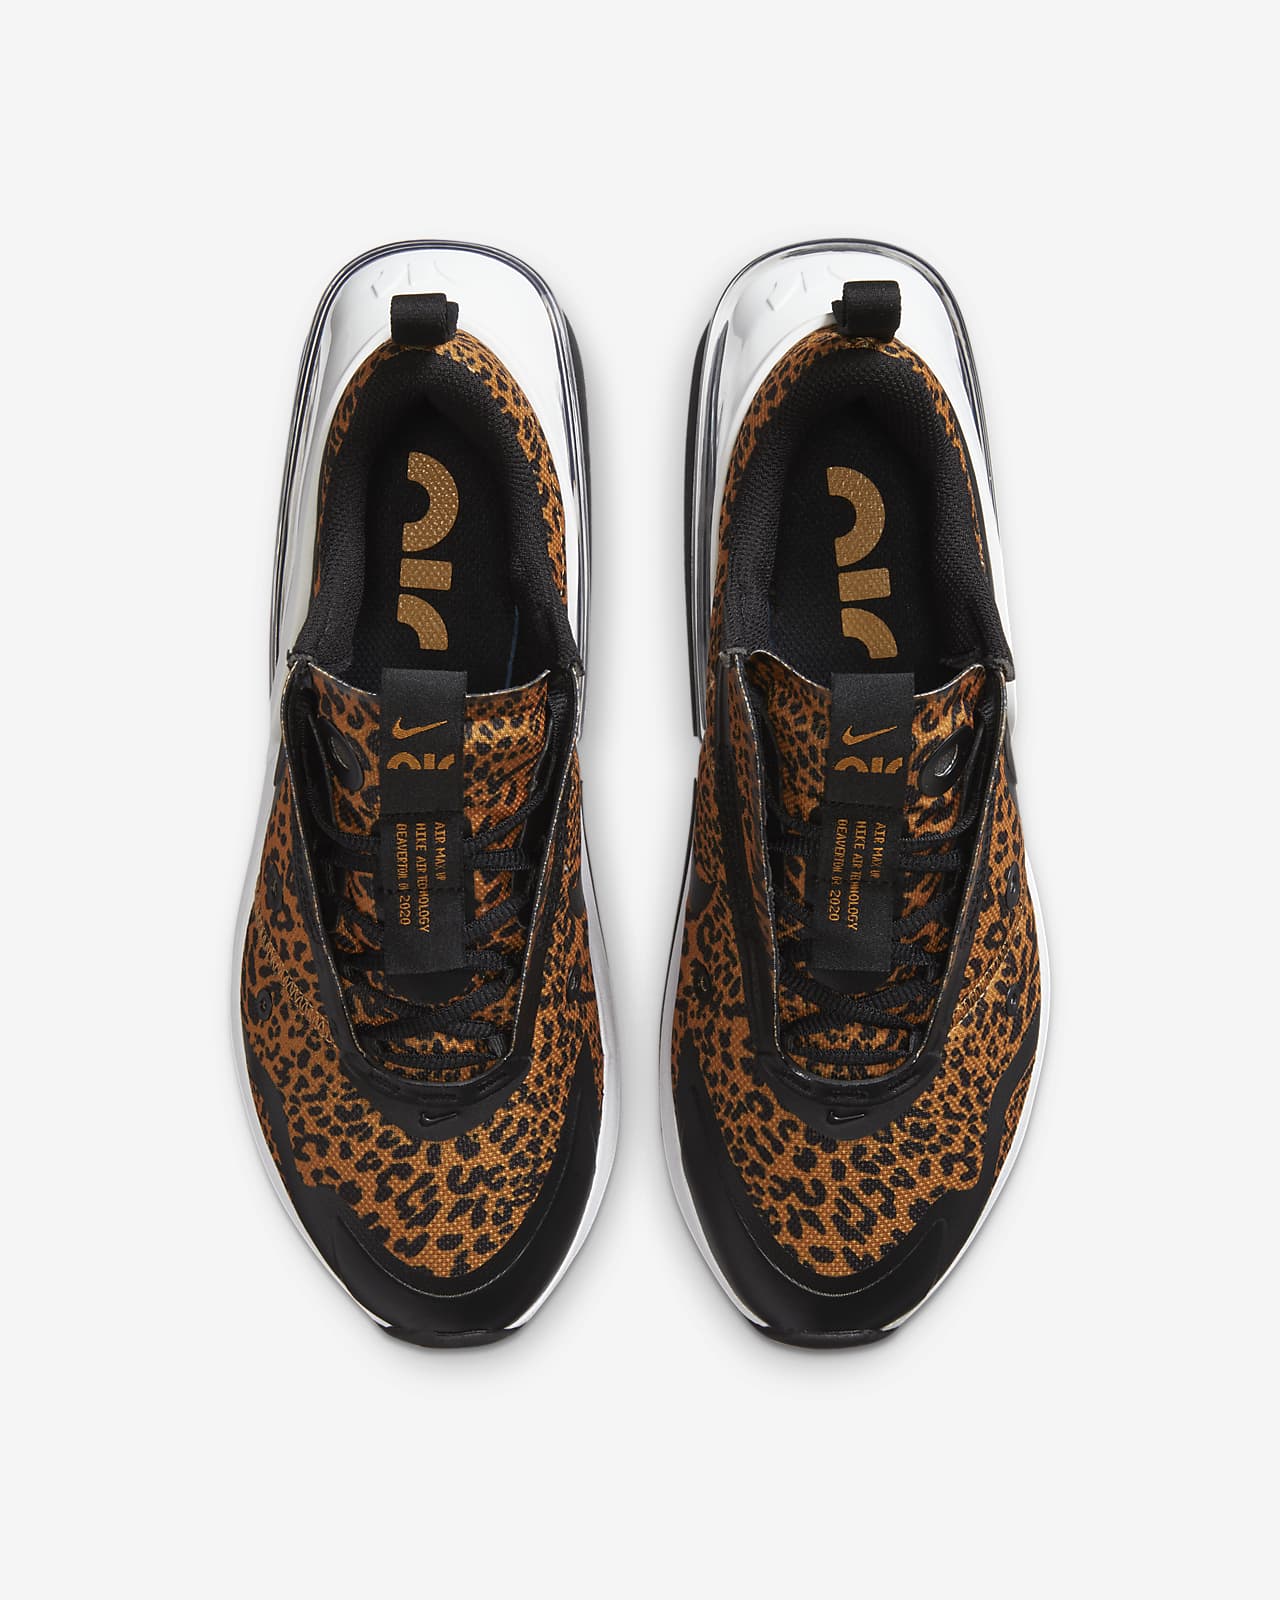 nike air max leopard shoes